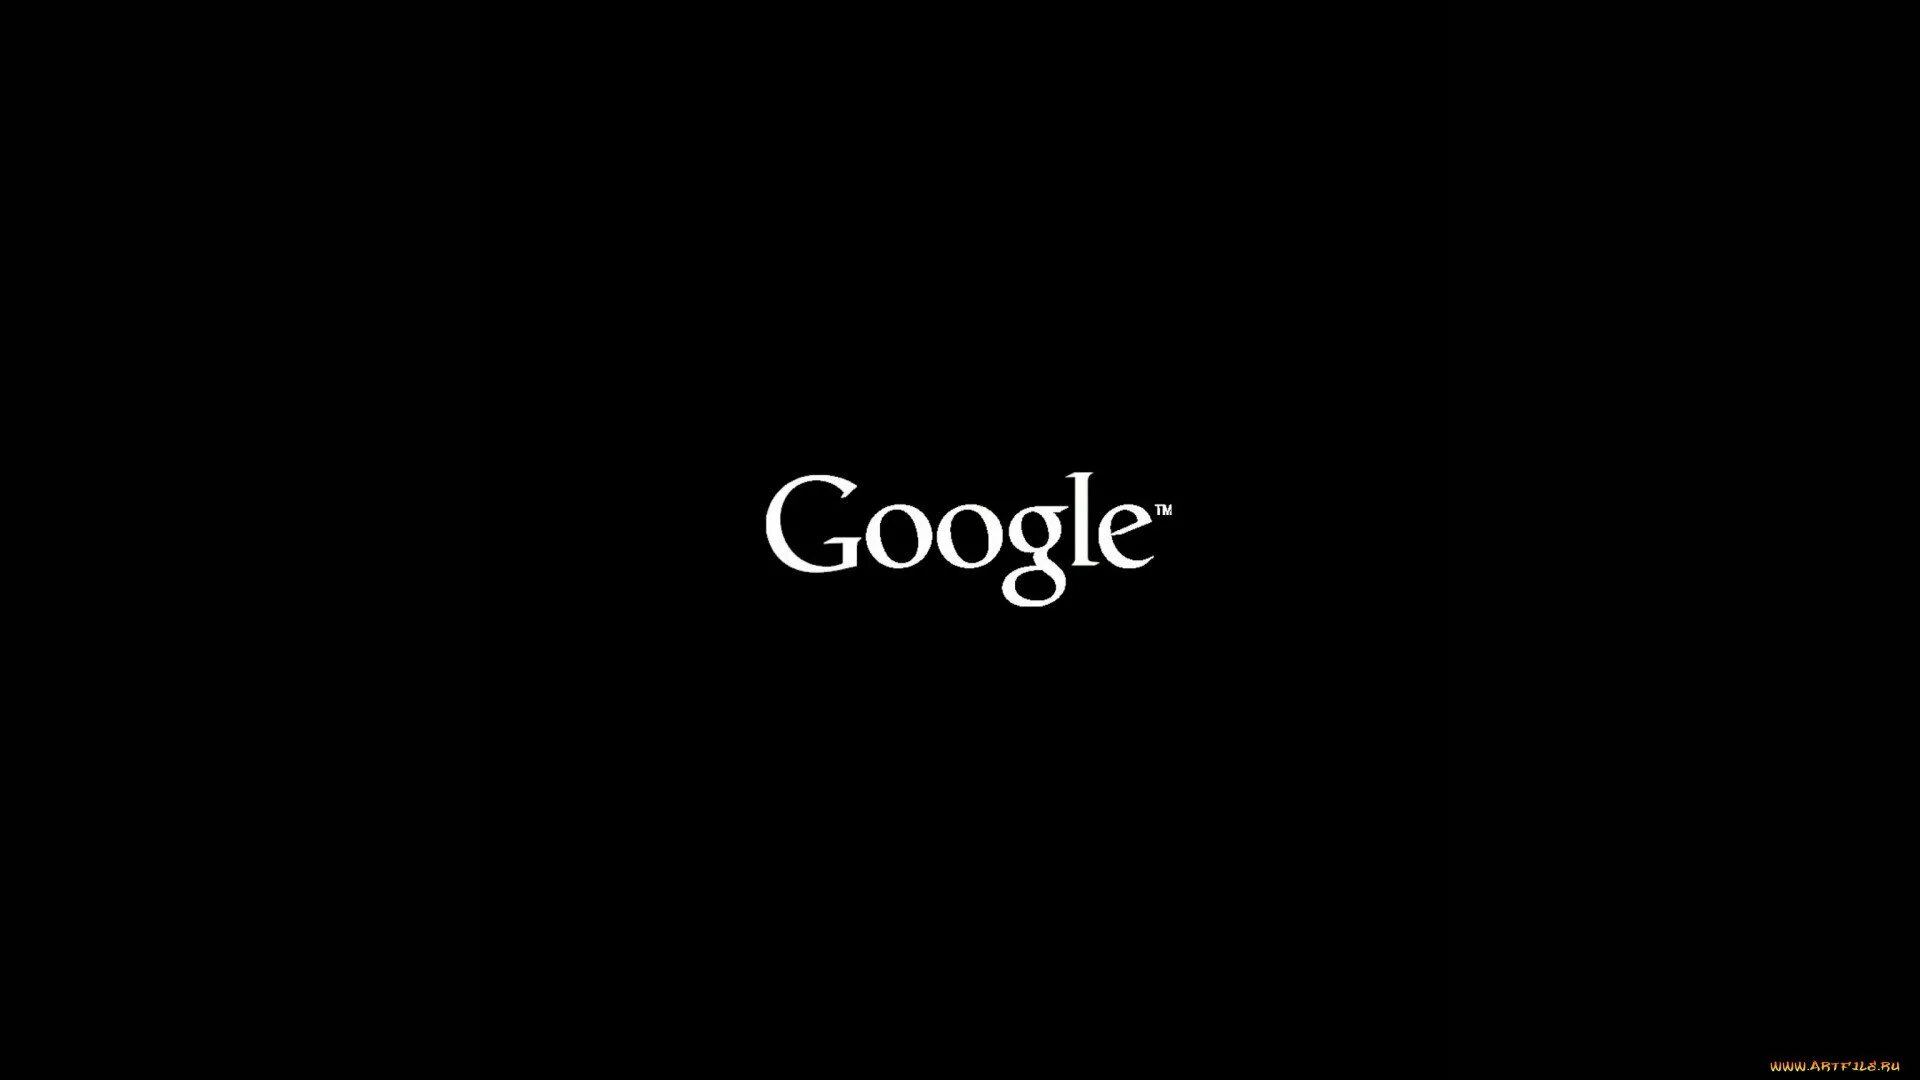 Черные обои белая надпись. Надписи на черном фоне. Черный гугл. Google logo. Чёрные обои с белыми надписями.